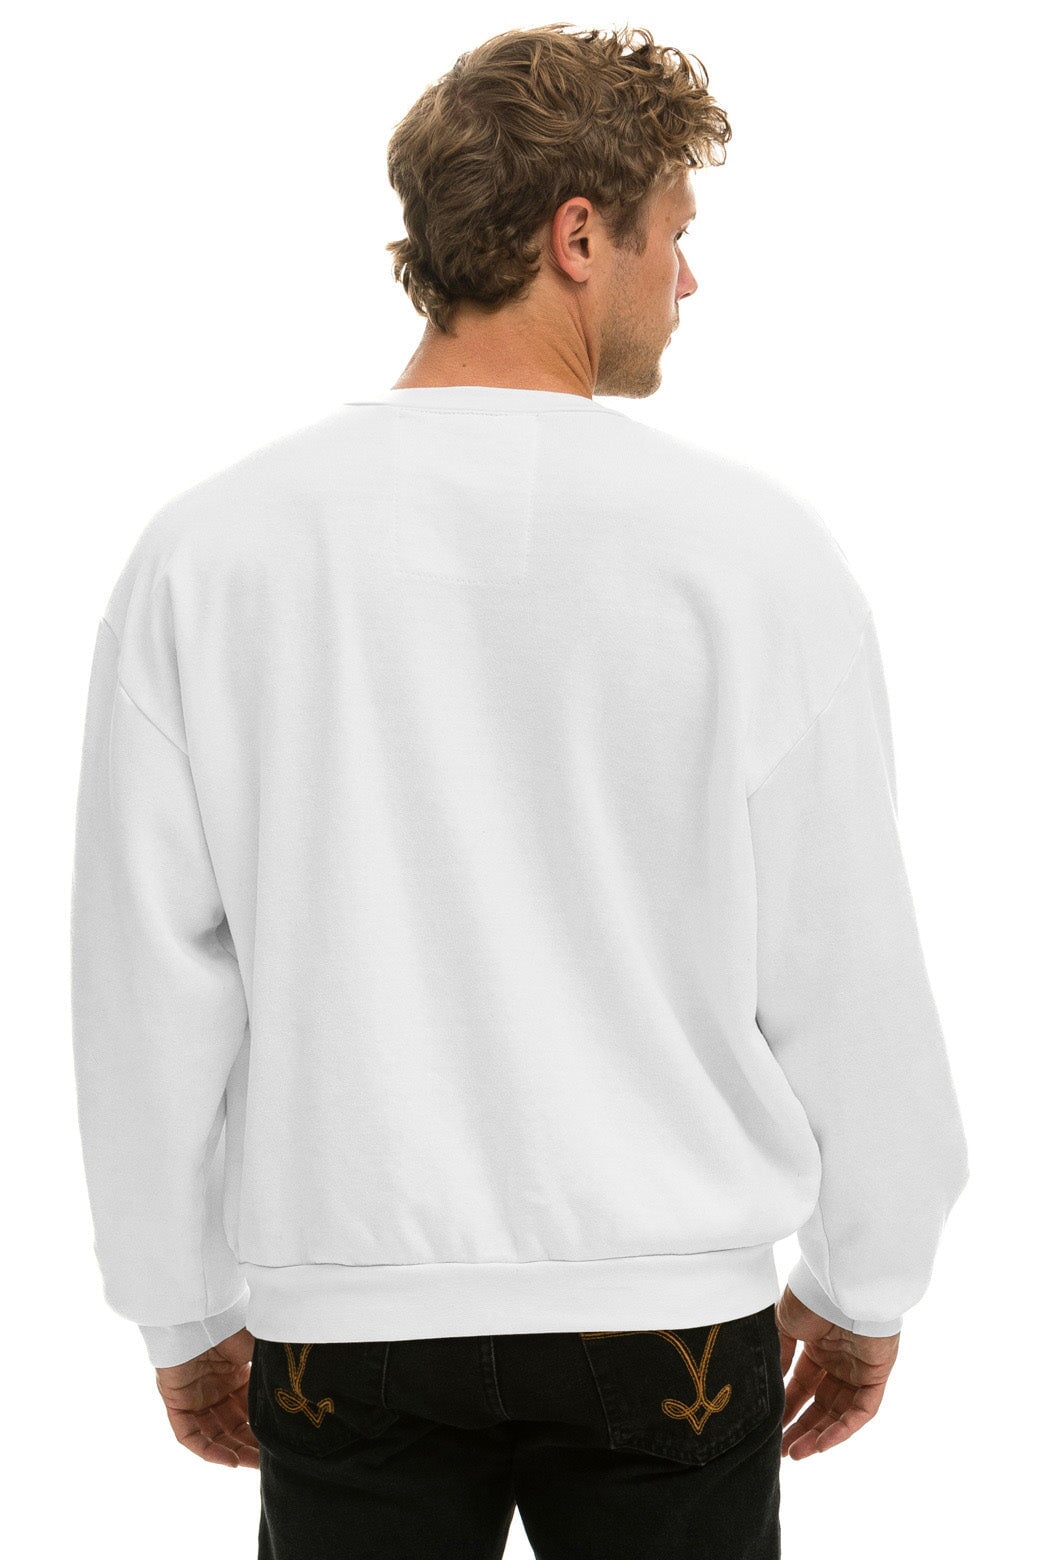 LOGO RELAXED CREW SWEATSHIRT - WHITE Sweatshirt Aviator Nation 